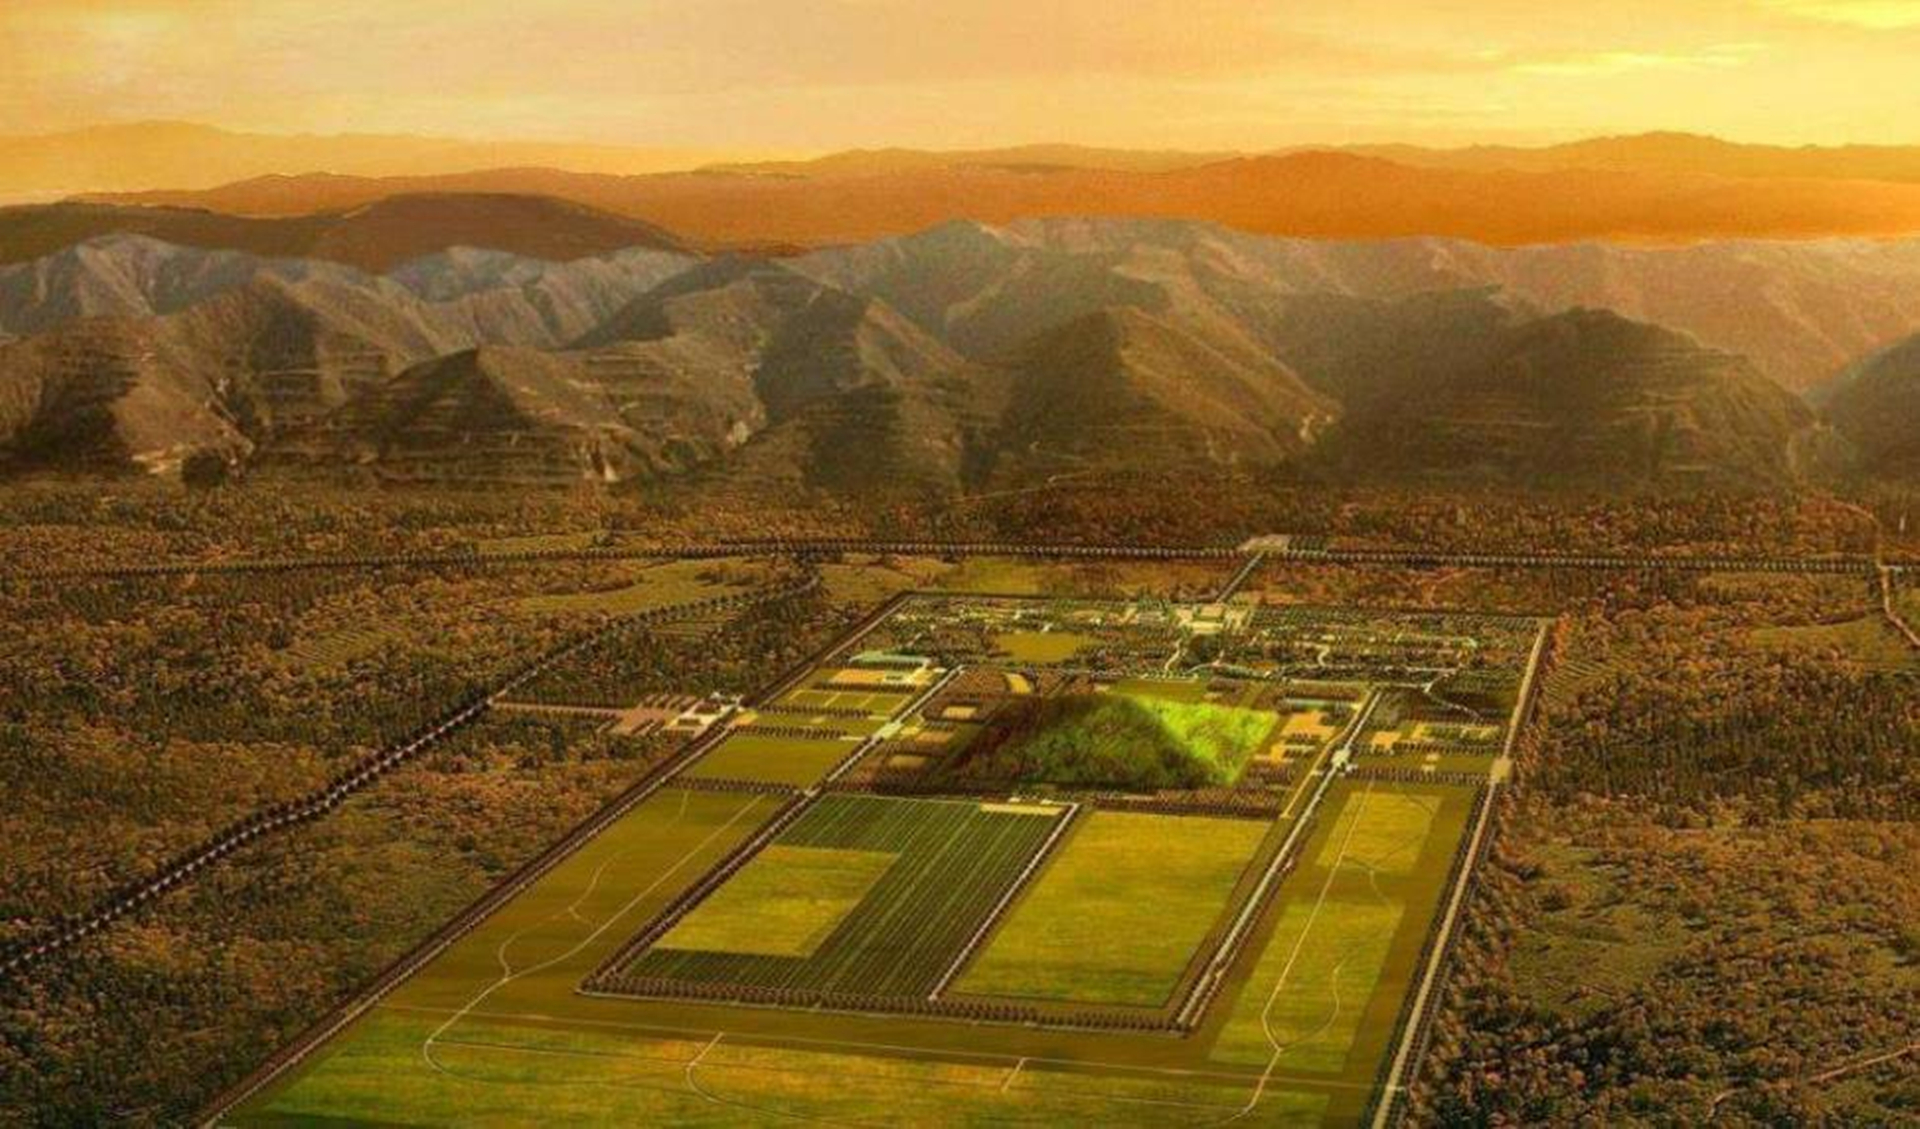 正规足球场多少米长(以如今的技术，打开秦始皇陵还需要多少年？真的有希望打开吗？)